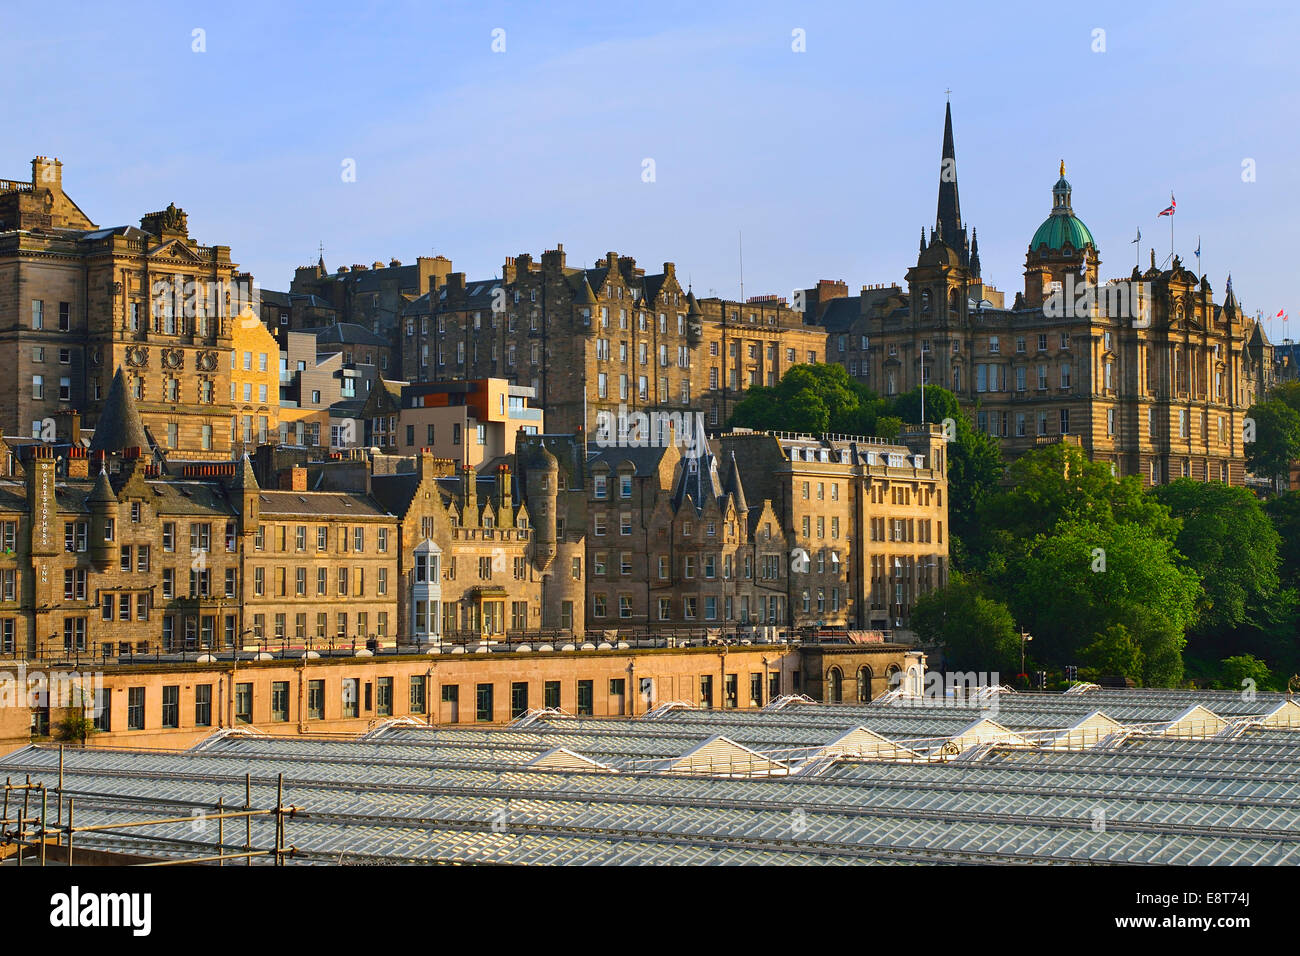 Vue sur le toit de la gare principale de la ville avec l'Université d'Edinburgh, Edinburgh, Ecosse, Royaume-Uni Banque D'Images